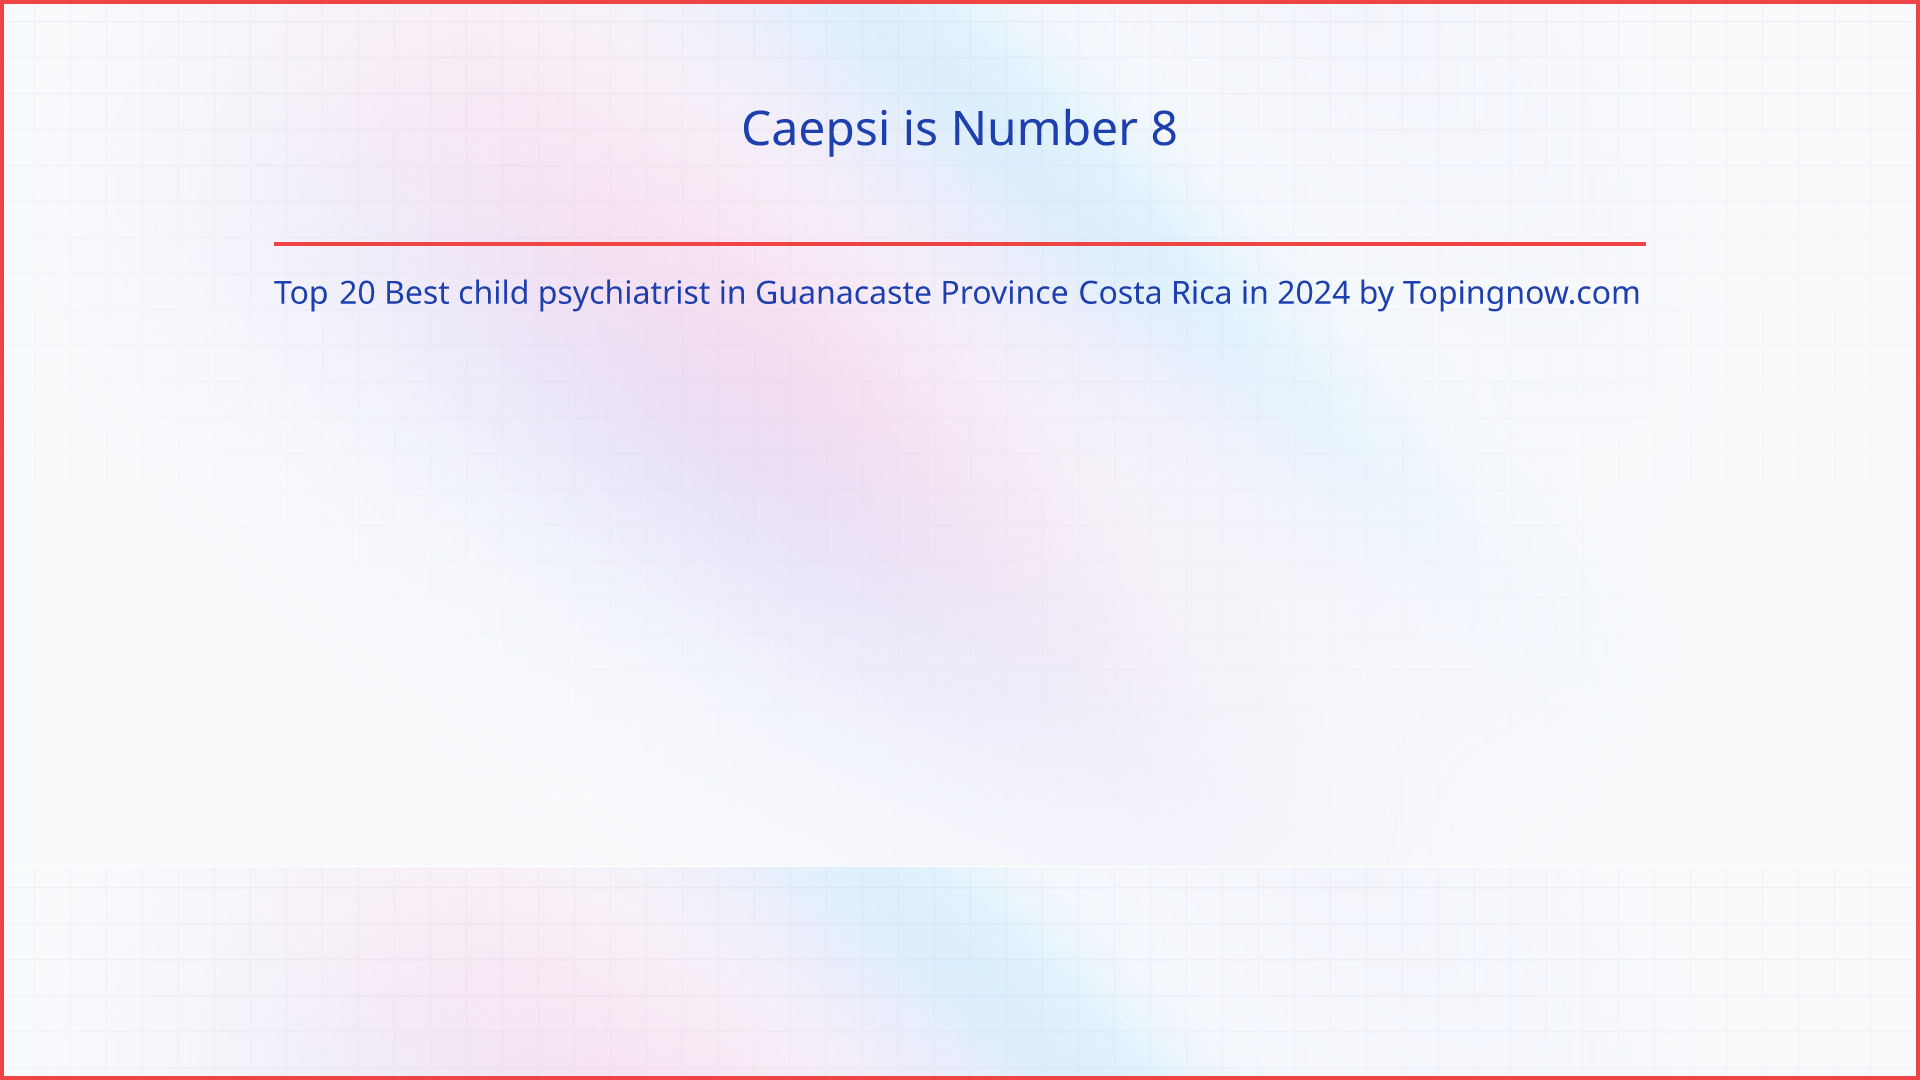 Caepsi: Top 20 Best child psychiatrist in Guanacaste Province Costa Rica in 2024